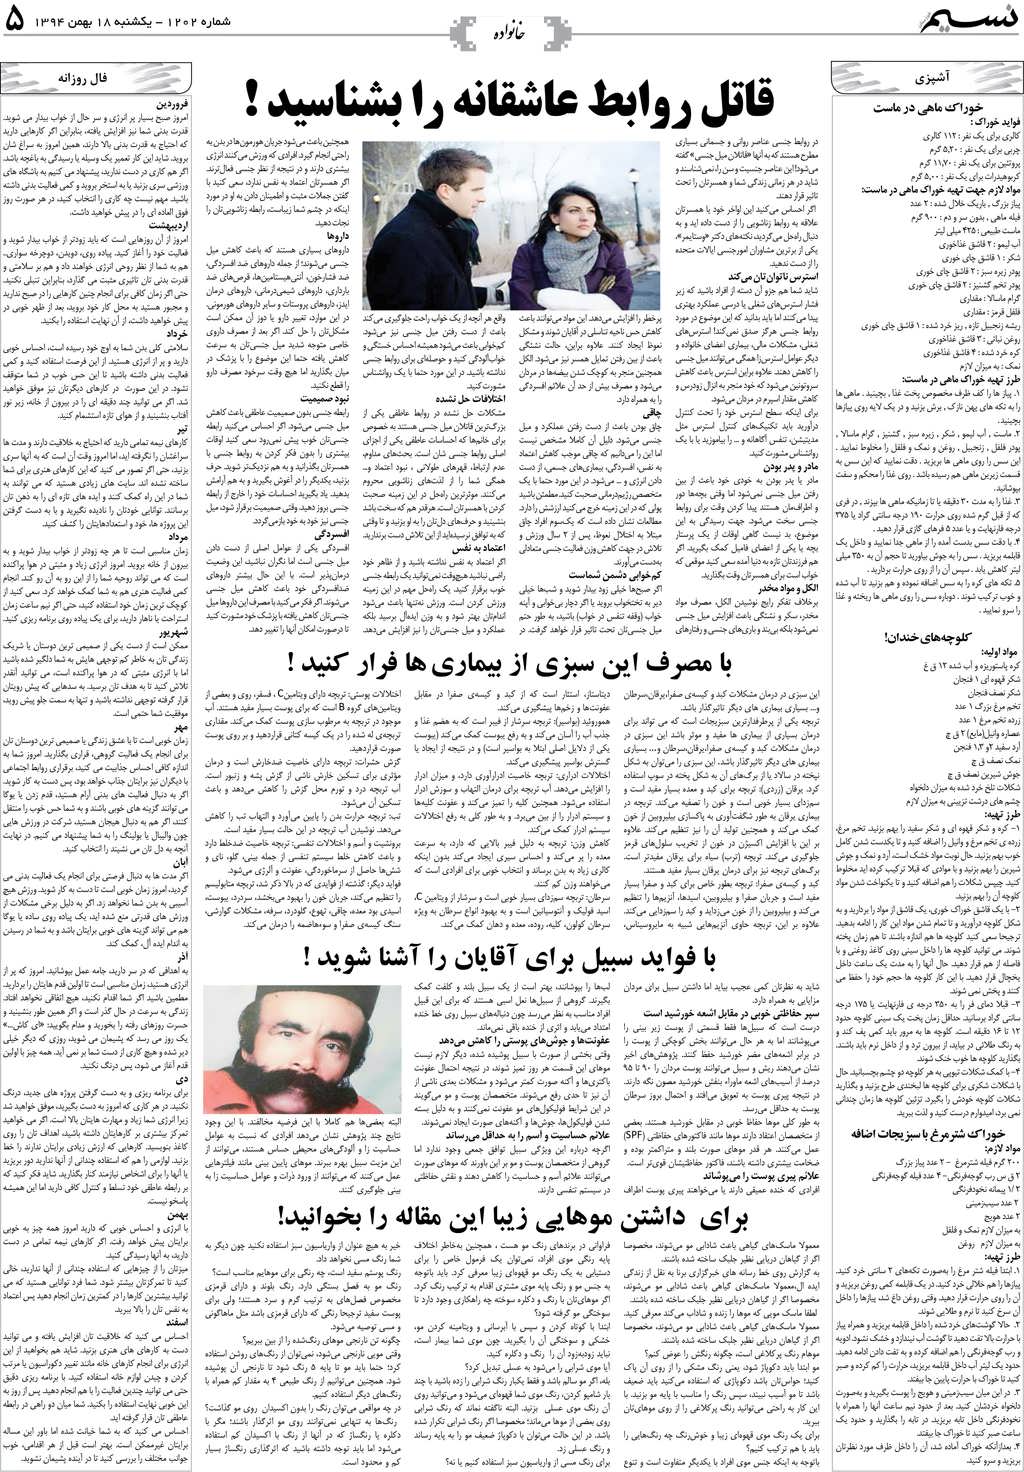 صفحه خانواده روزنامه نسیم شماره 1202